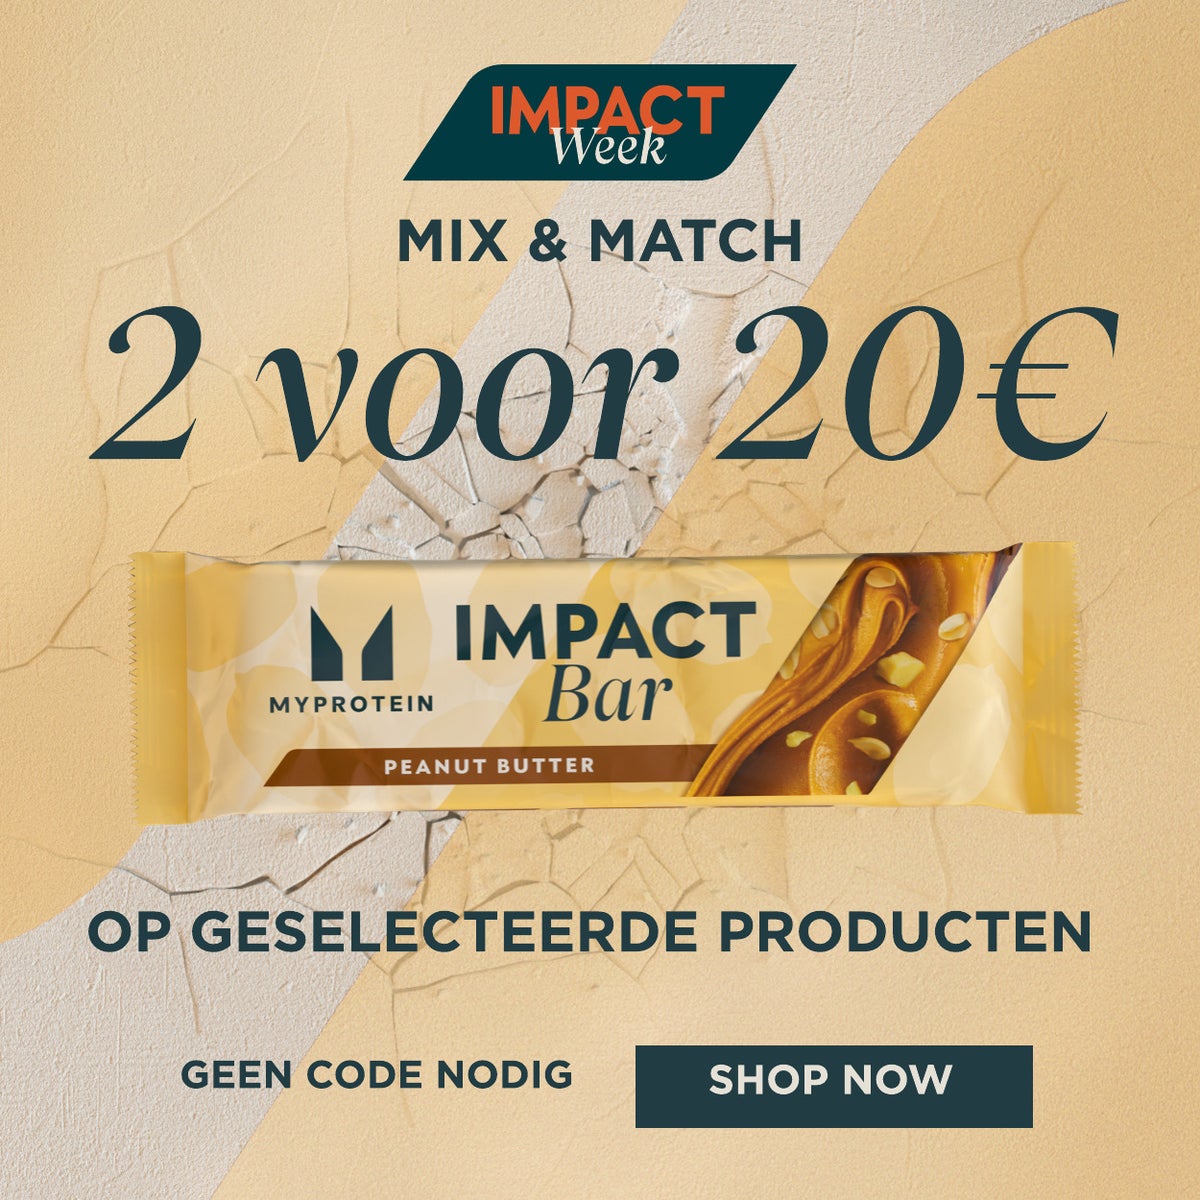 Impact Week - Mix & Match - 2 voor 20€